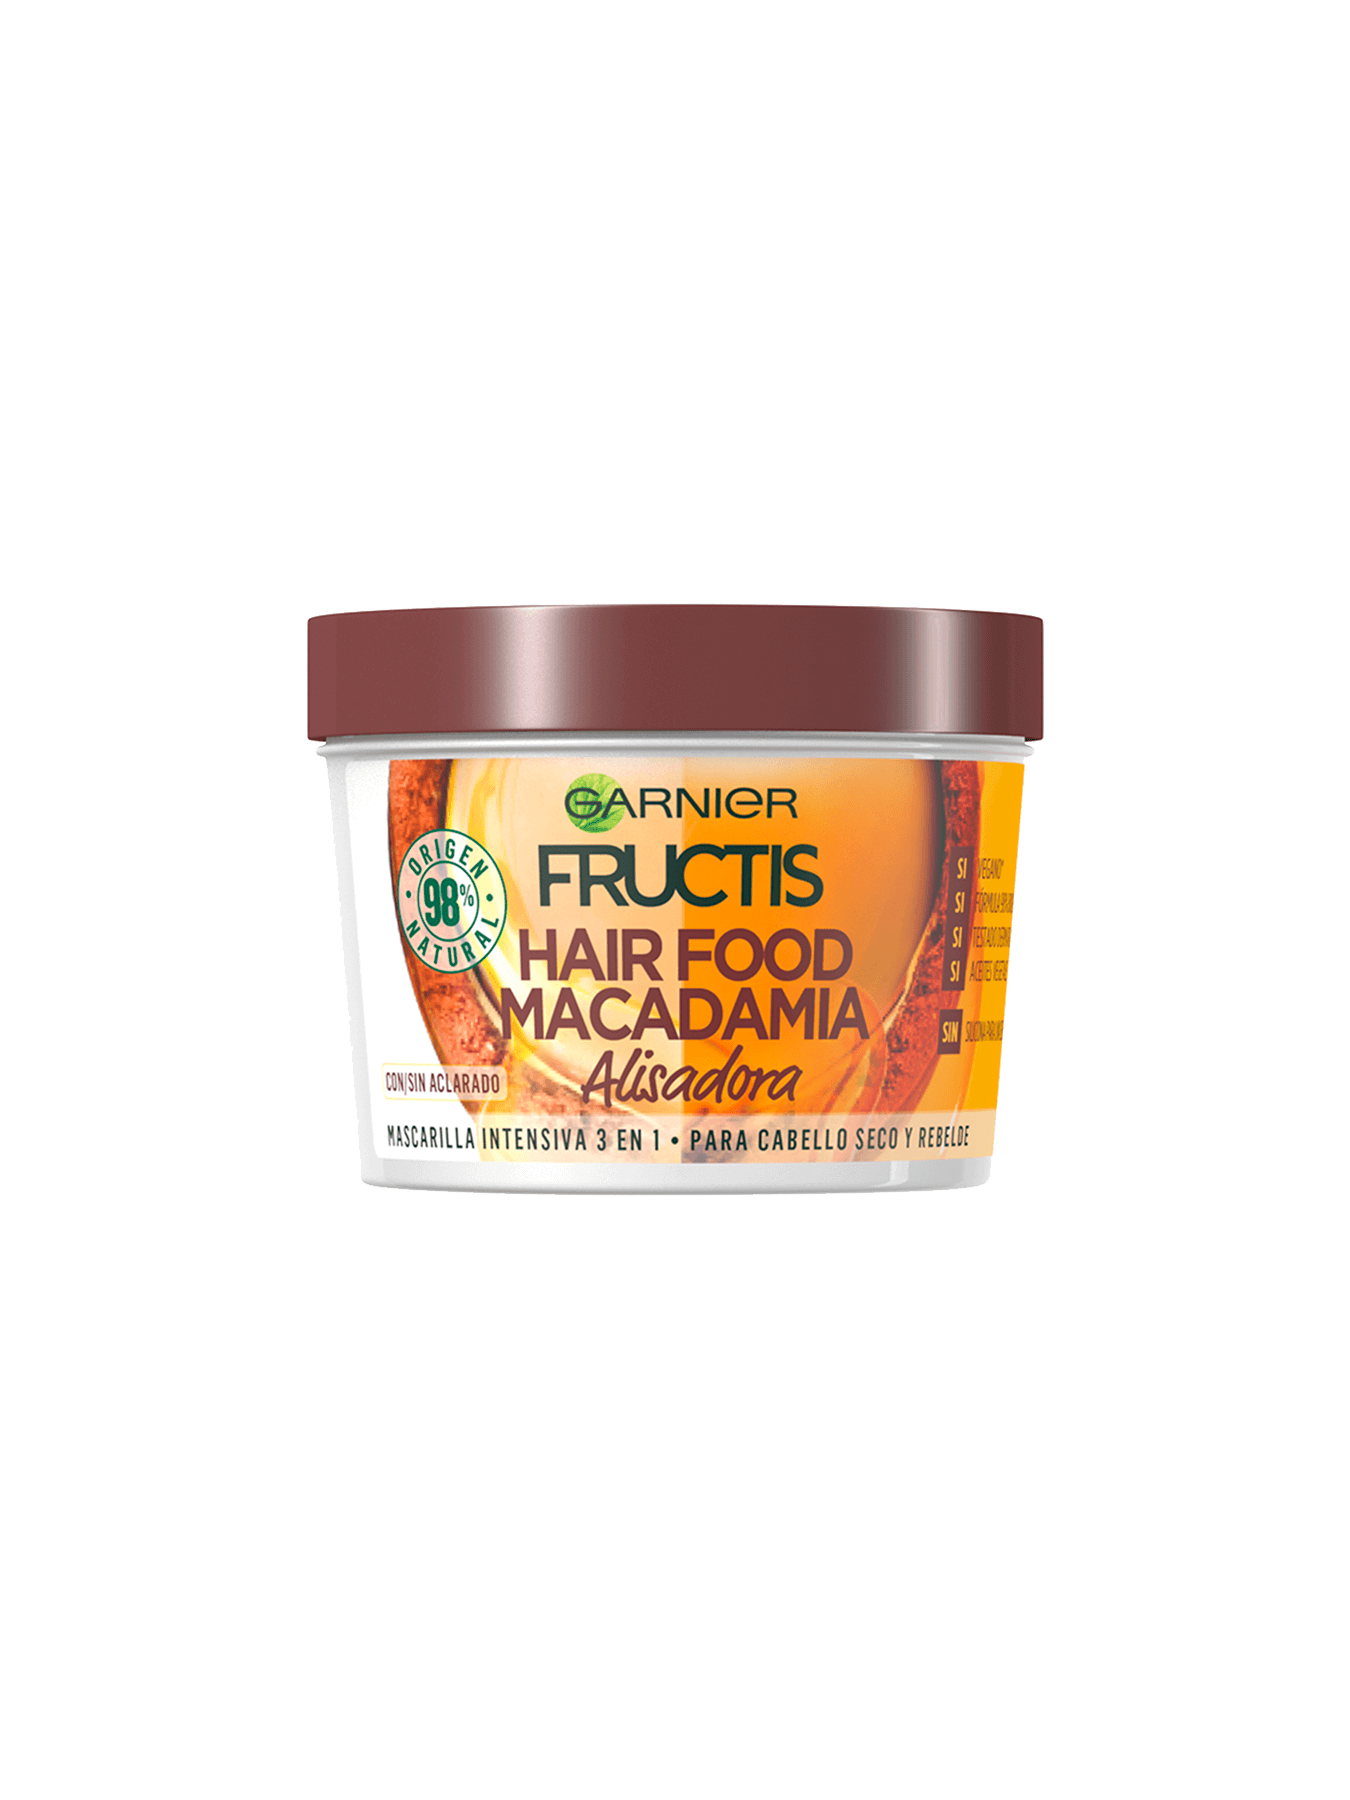 Necesitar Contabilidad caja registradora Hair Food Macadamia: Mascarilla capilar de macadamia 3 en 1 | Garnier